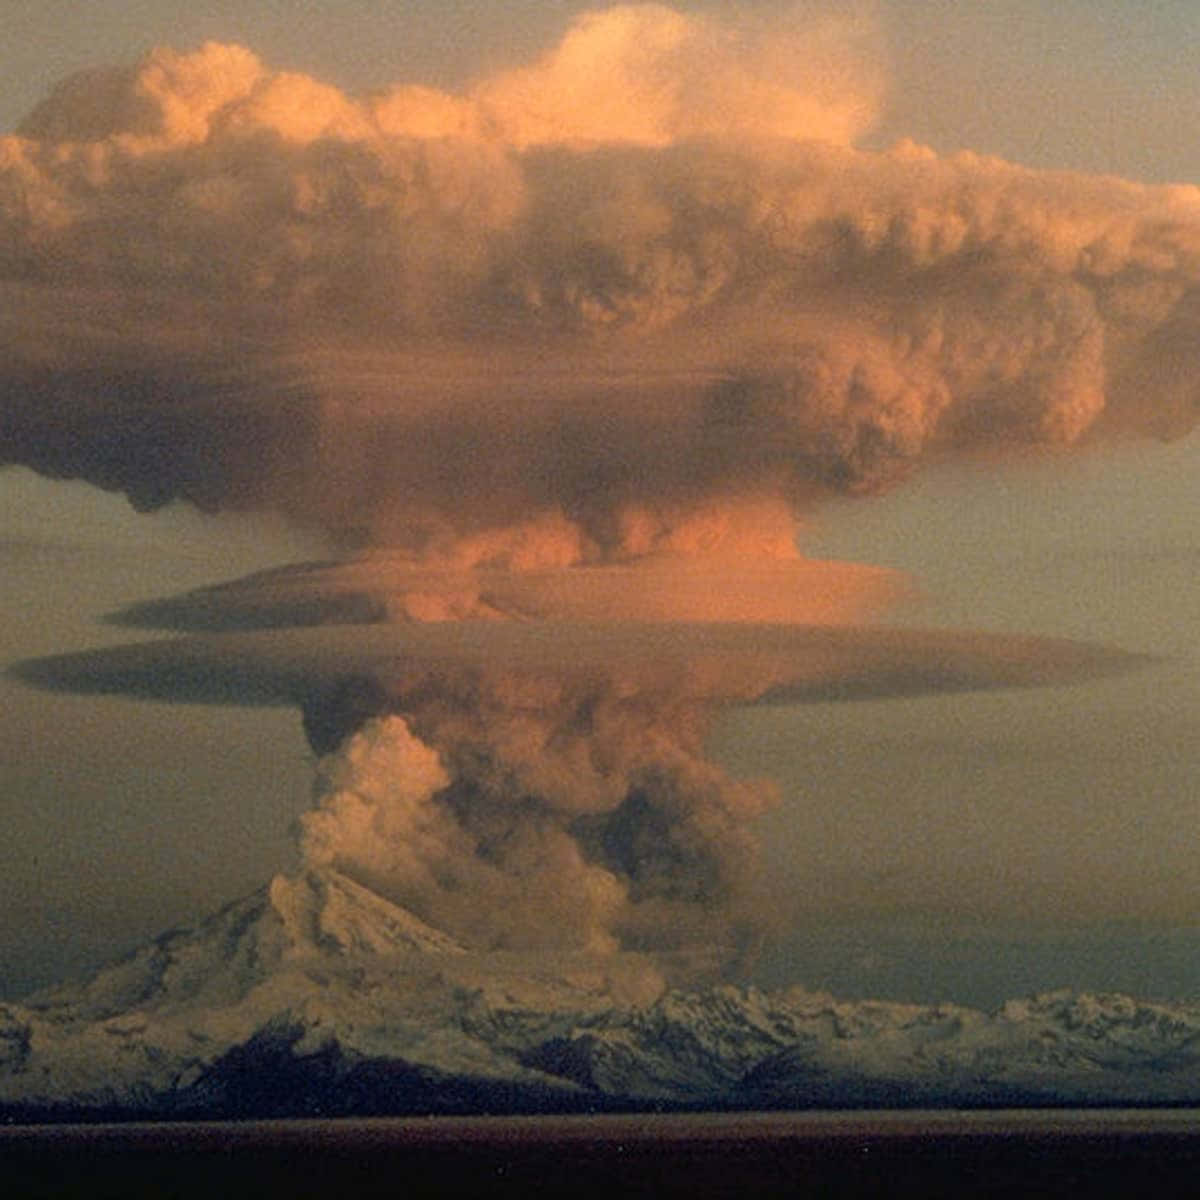 Unagrande Nube Di Fumo È Visibile Da Un Vulcano